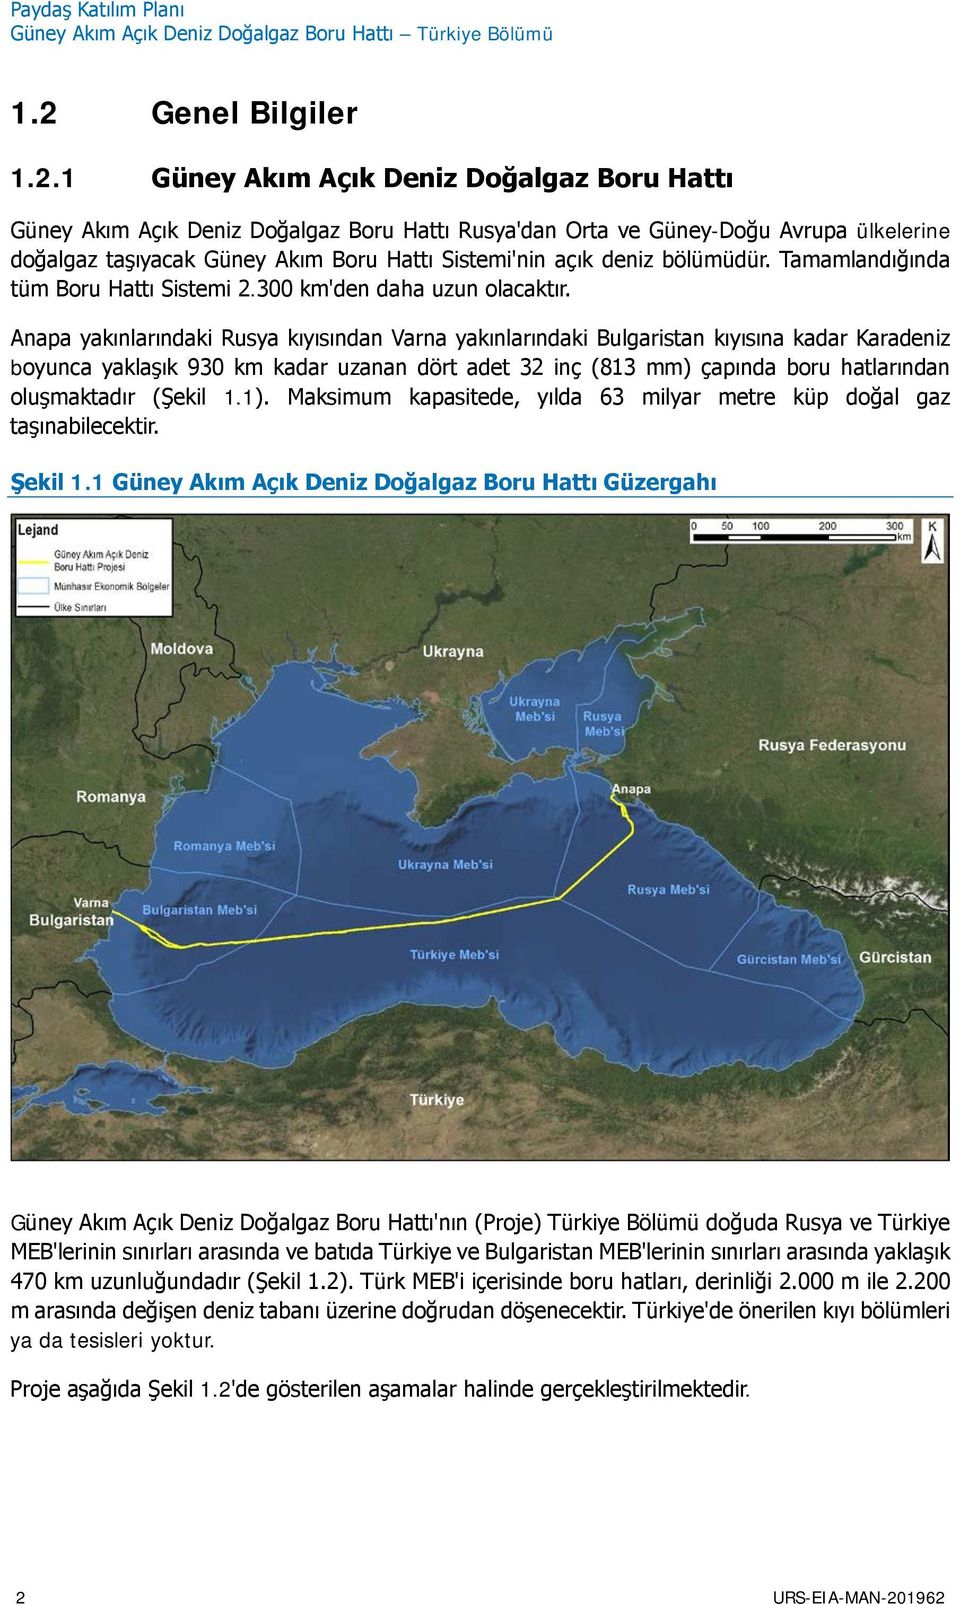 1 Güney Akım Açık Deniz Doğalgaz Boru Hattı Güney Akım Açık Deniz Doğalgaz Boru Hattı Rusya'dan Orta ve Güney-Doğu Avrupa ülkelerine doğalgaz taşıyacak Güney Akım Boru Hattı Sistemi'nin açık deniz